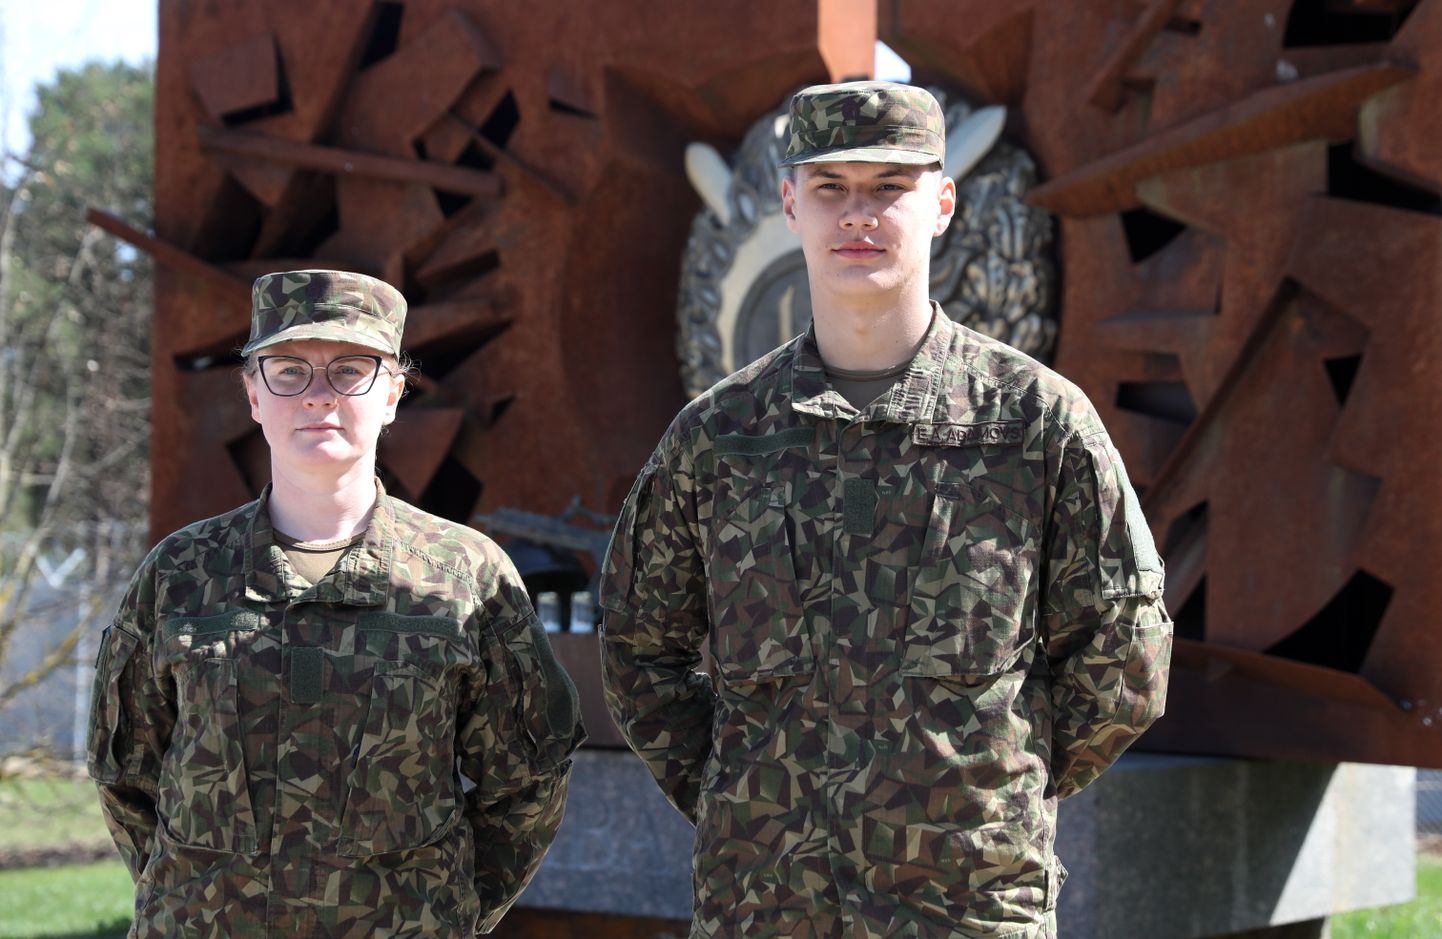 Nacionālo bruņoto spēku (NBS) kareive Elīna Lauva un kareivis Ernests Adamovs piedalās mediju pasākumā NBS Ādažu bāzē